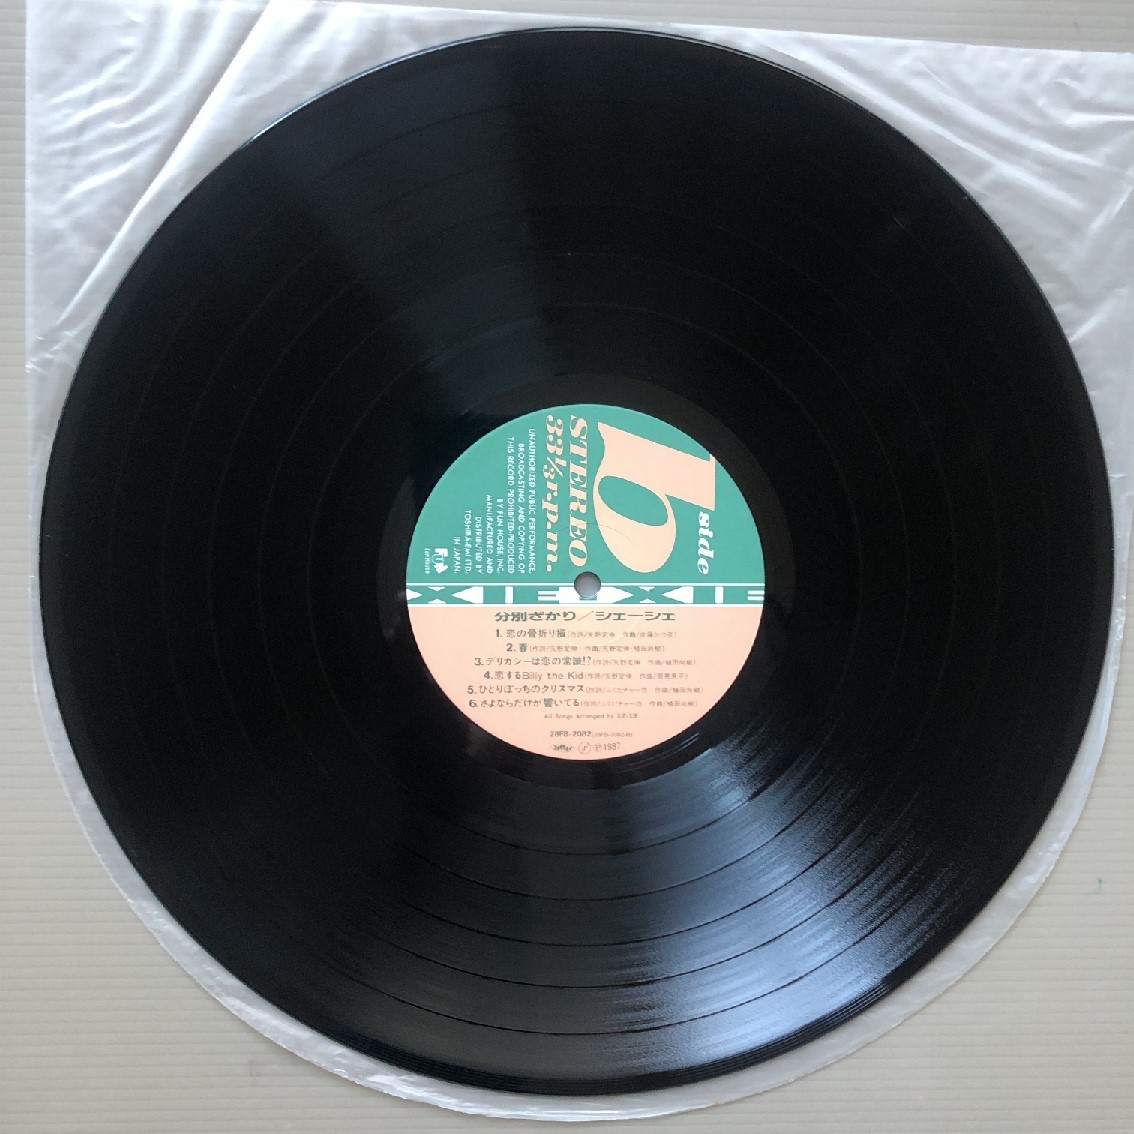 傷なし美盤 レア盤 シェーシェ Xie-Xie 1987年 LPレコード 分別ざかり L'AGE de RAISON 国内盤 オリジナルリリース盤 帯付 J-Pop_画像9